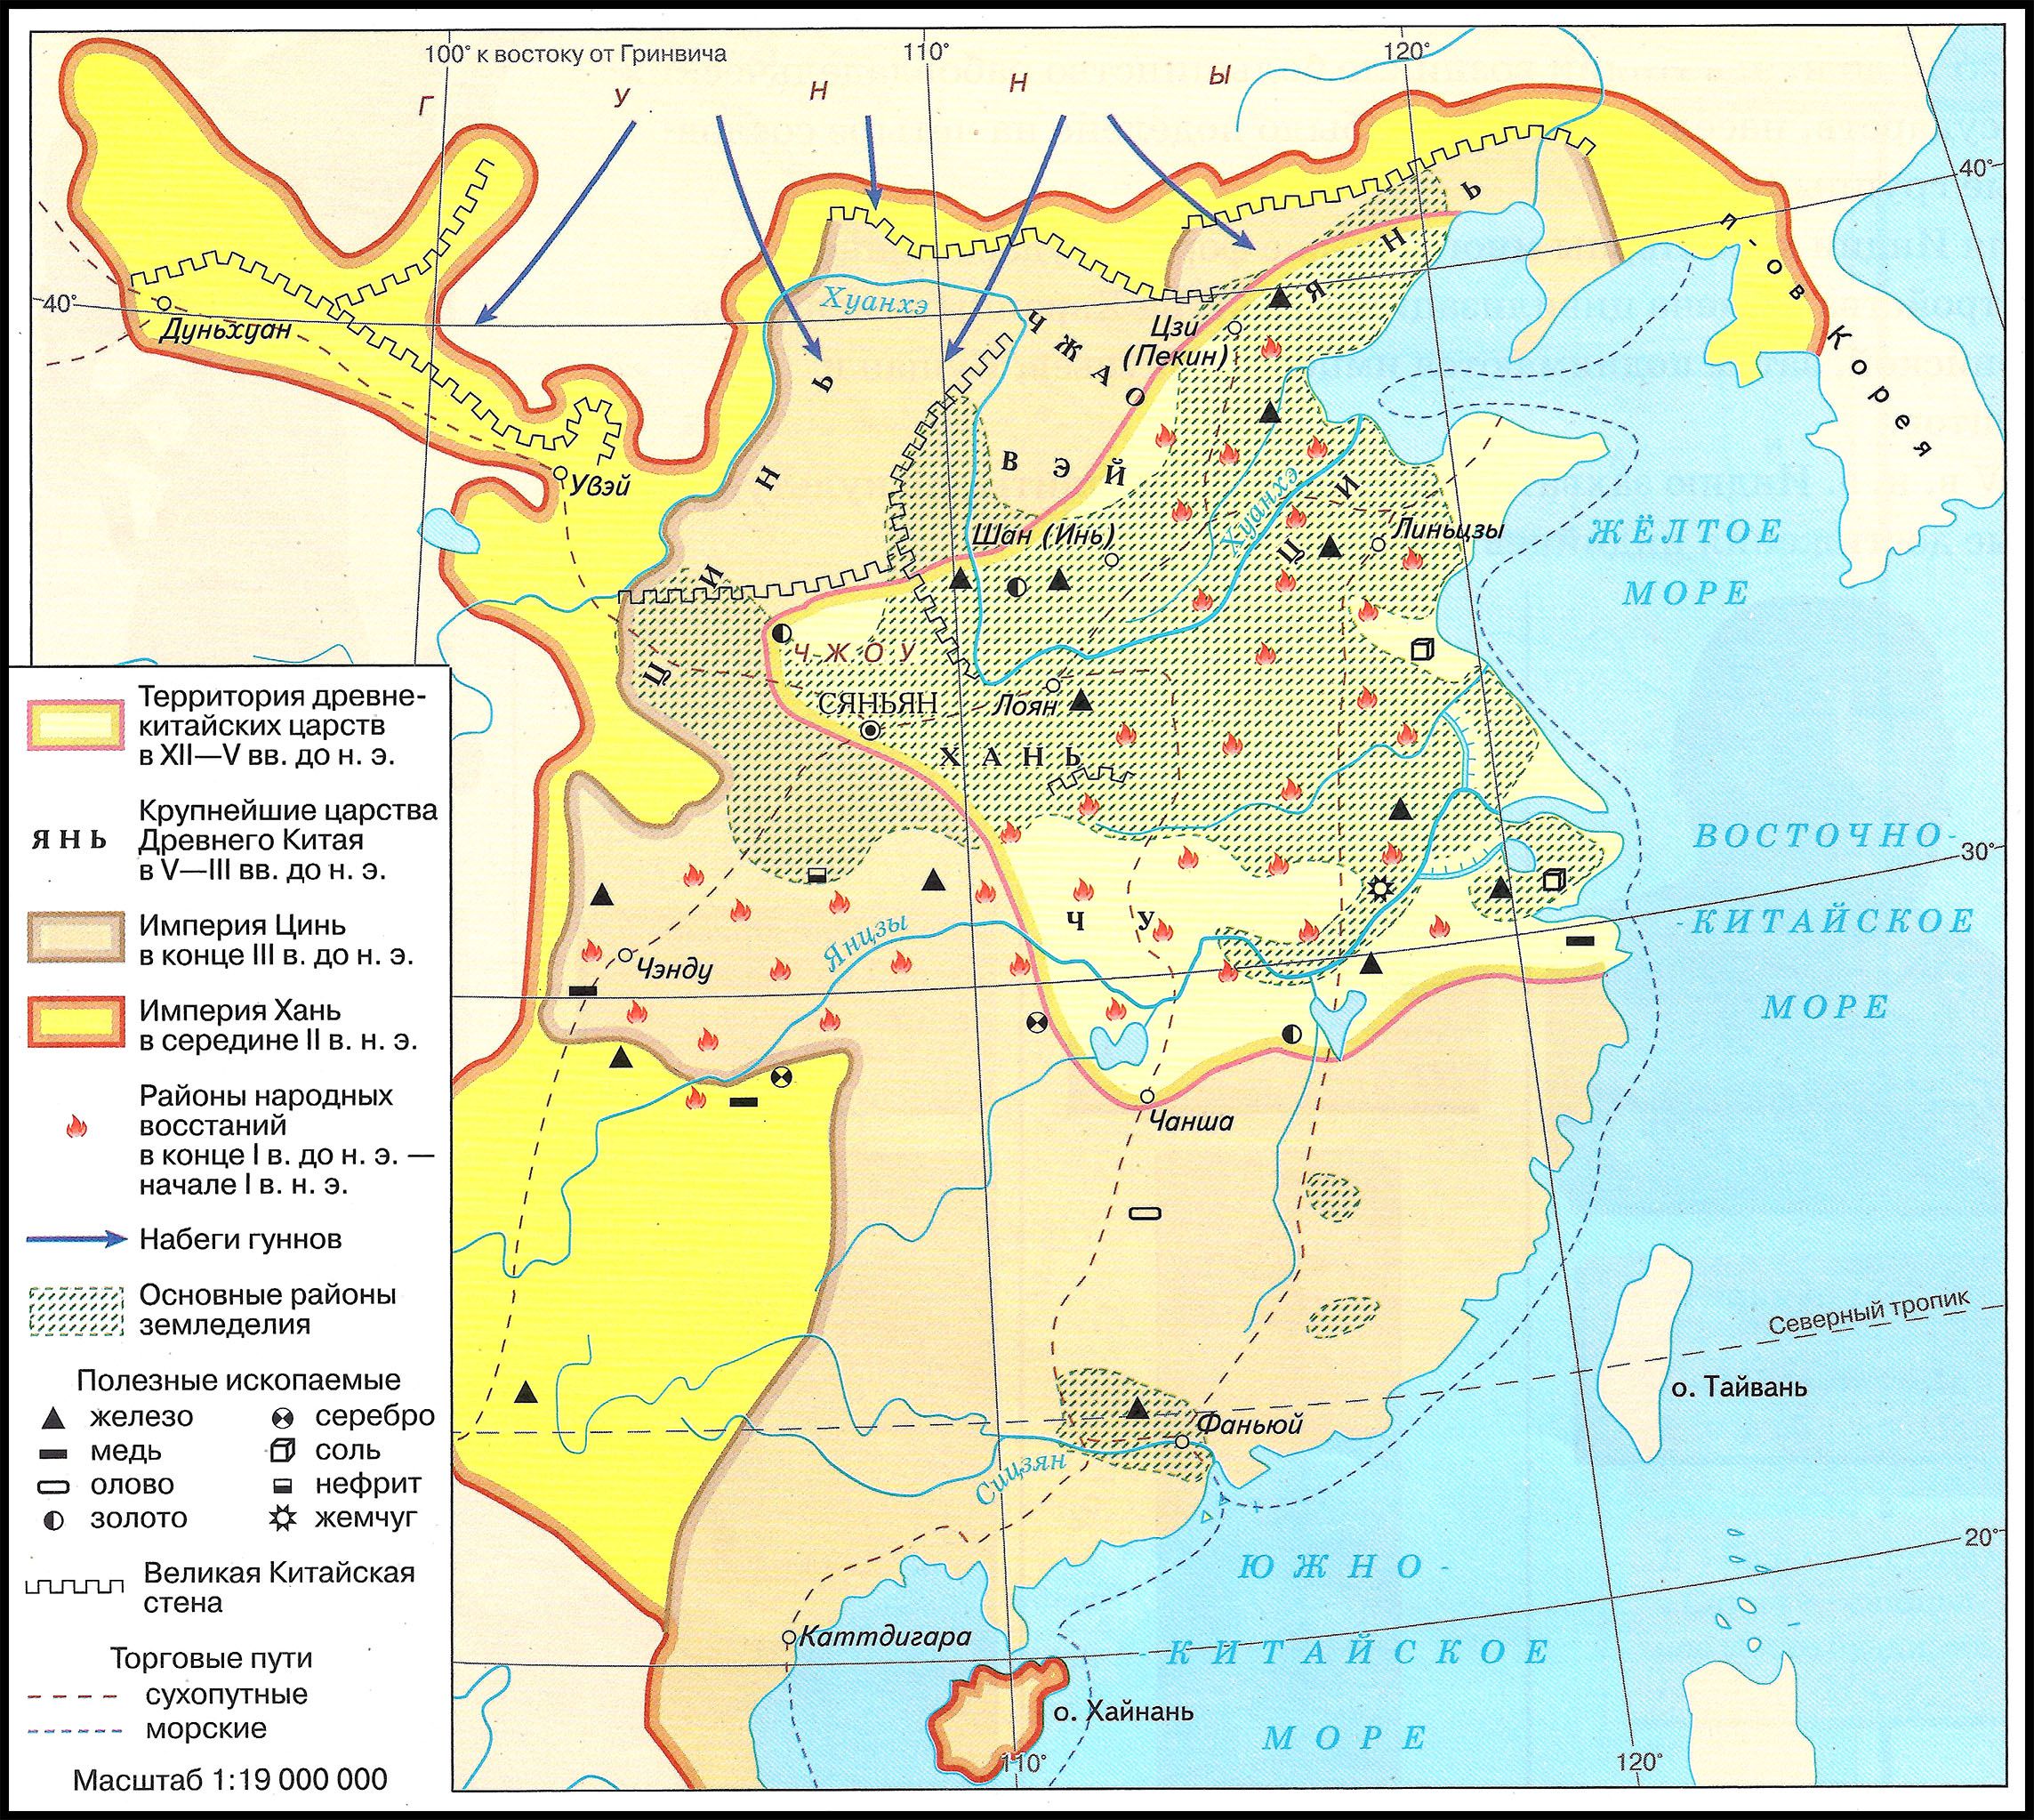 Древний Китай, 1100 г. до н.э. - 220 г. н.э.